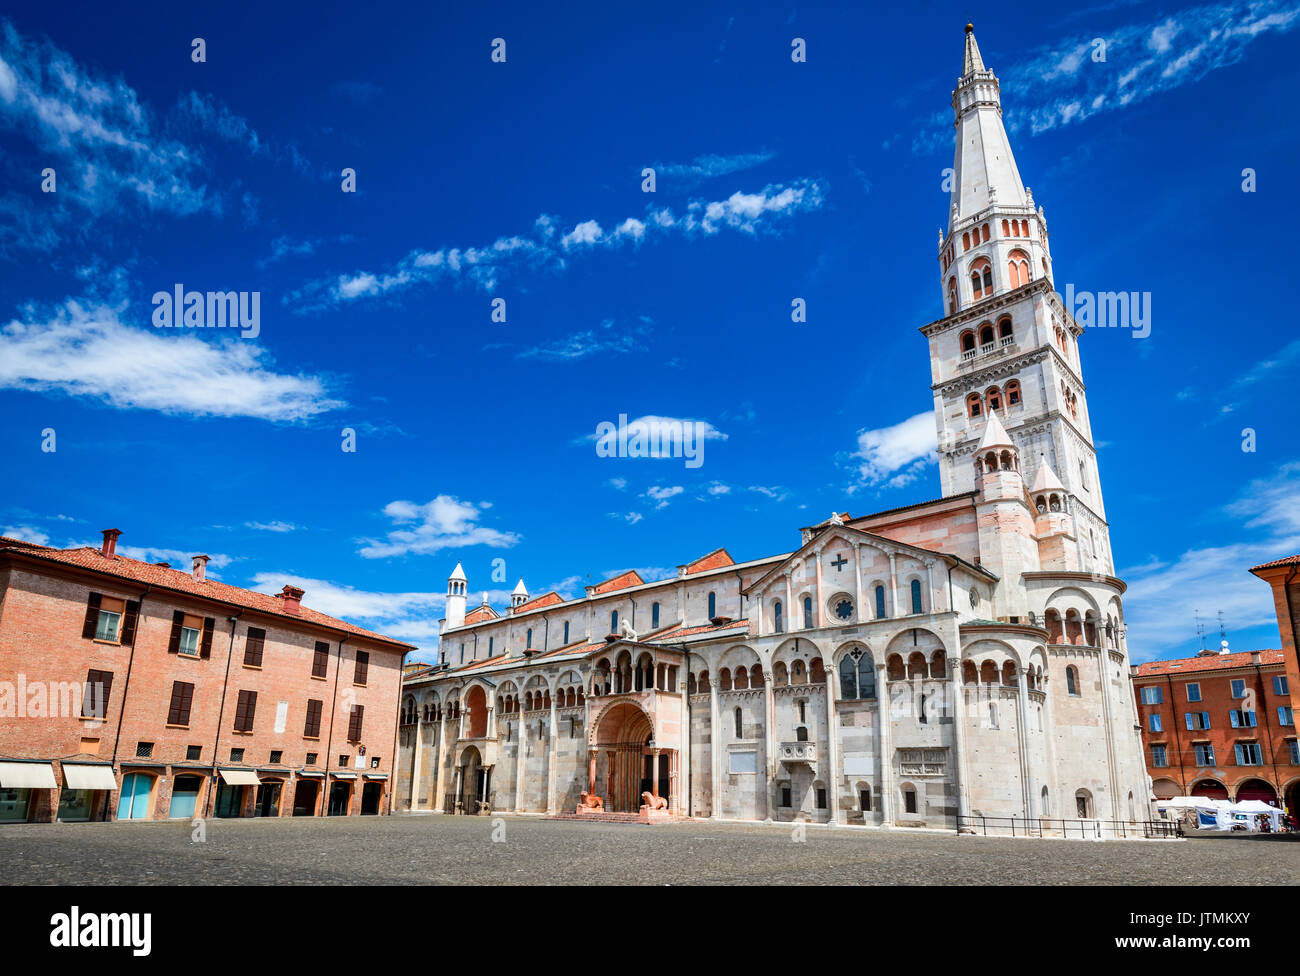 Modena, Italien - Piazza Grande und Dom von Modena, die römisch-katholische Kirche, World Heritage Site. Stockfoto